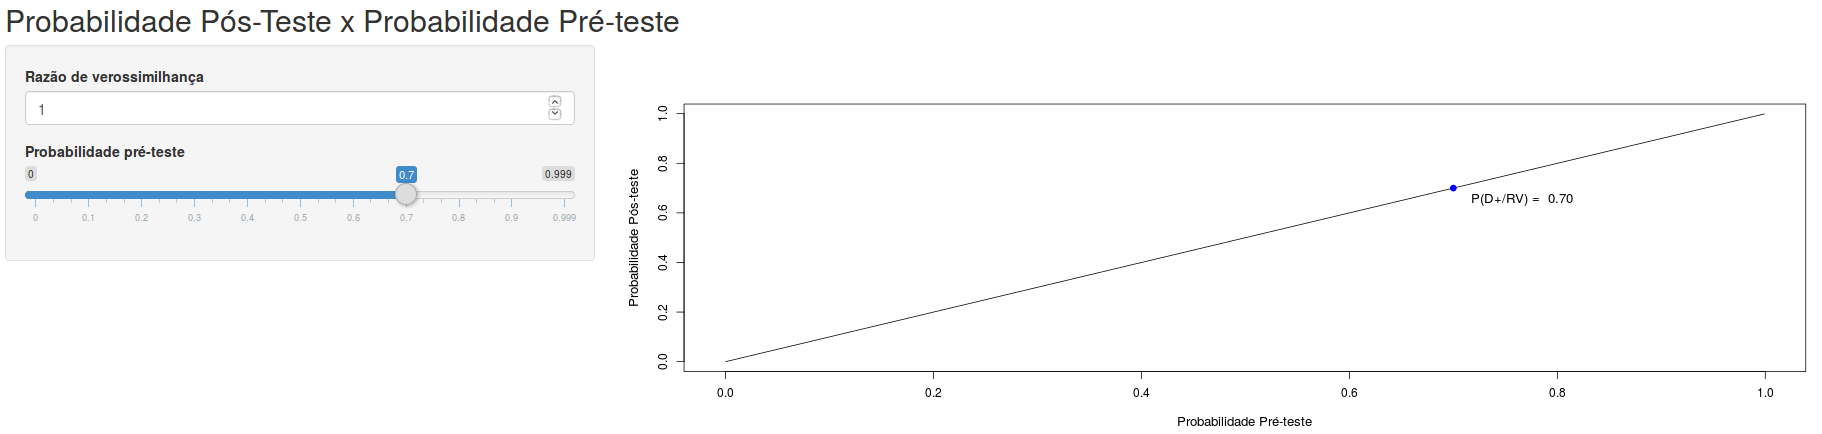 Aplicação que permite ao usuário visualizar a influência da razão de verossimilhança sobre a curva probabilidade de doença pós-teste x probabilidade pré-teste.